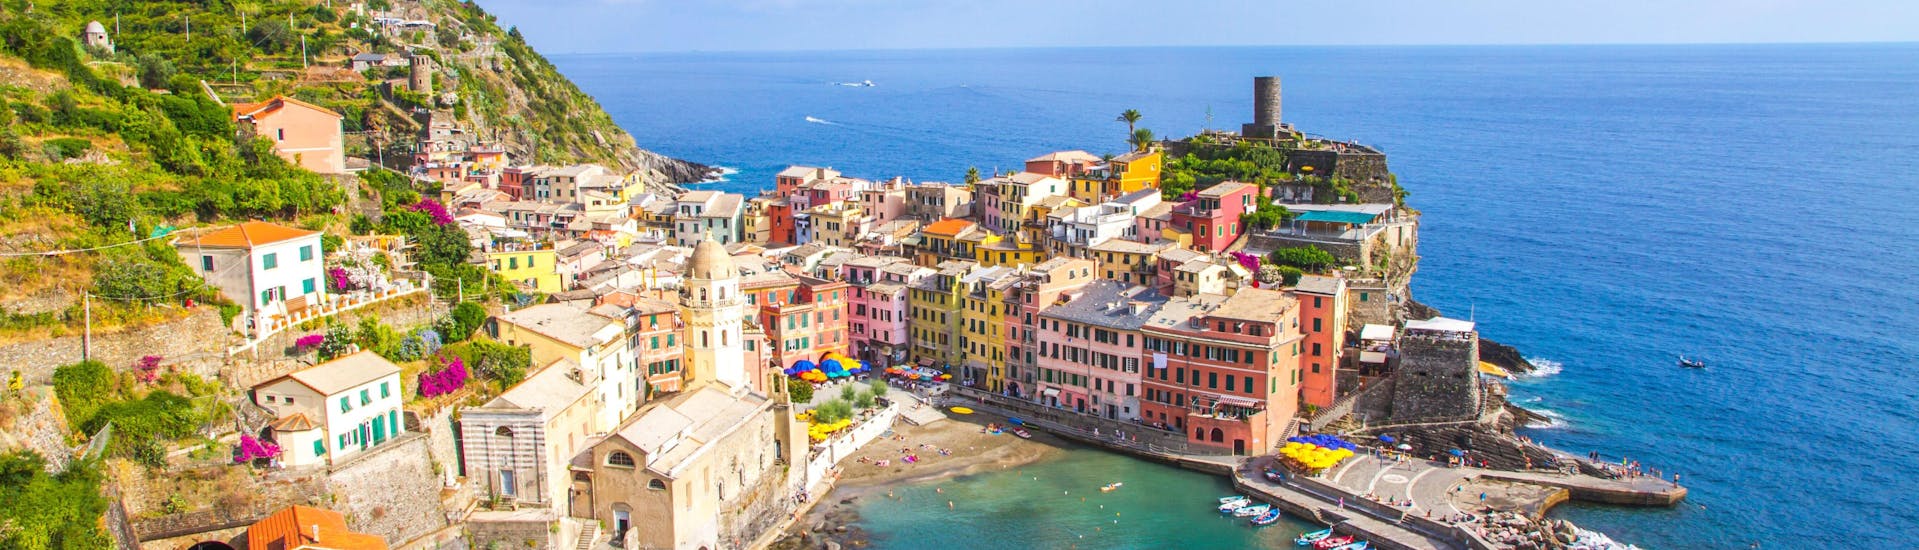 Blick über Vernazza, ein beliebtes Ziel für Bootsausflüge in den Cinque Terre.